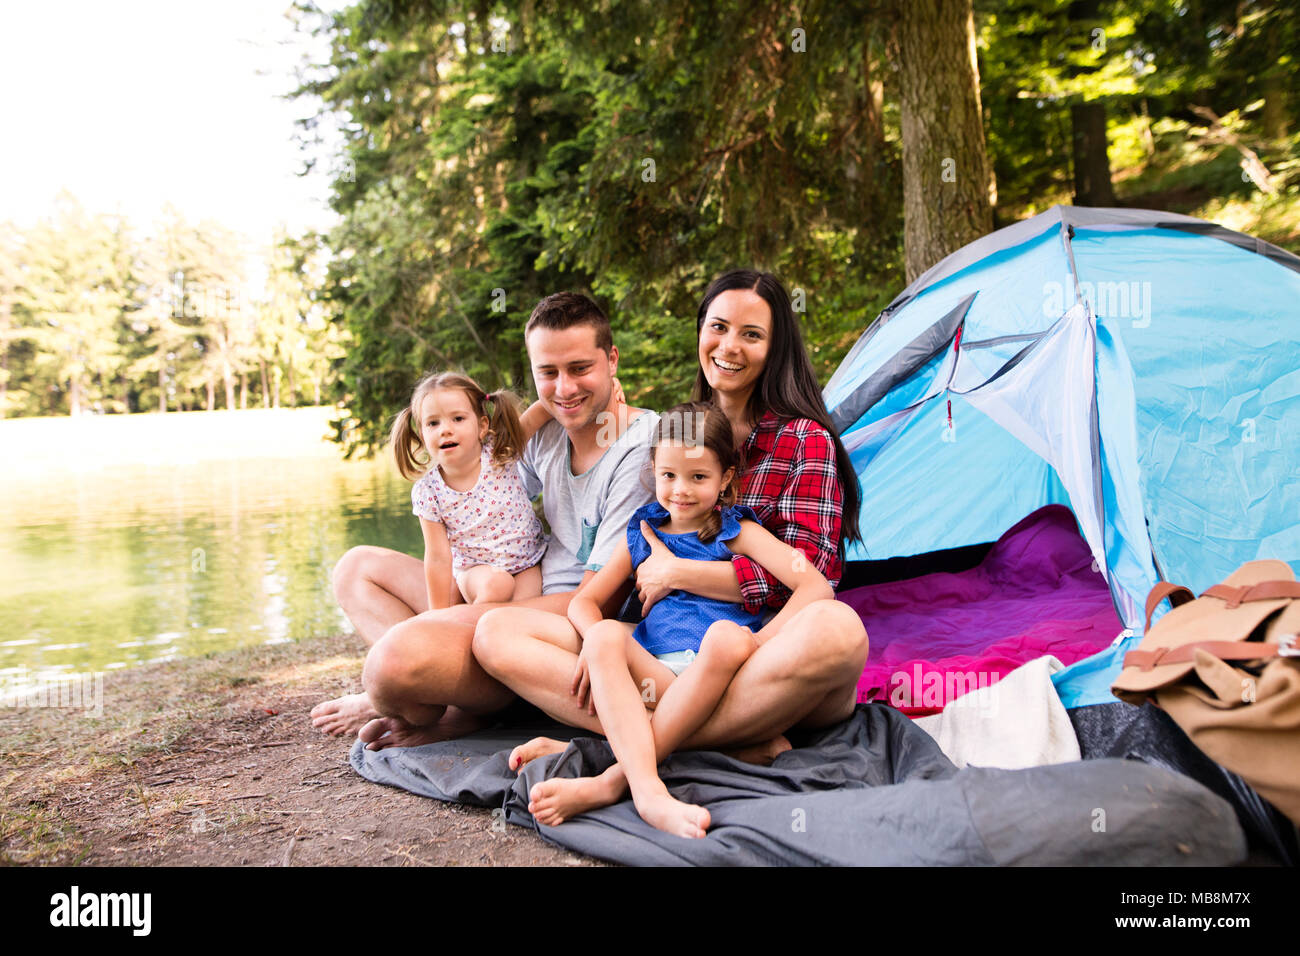 Schöne junge Familie mit Töchtern camping im Wald Stockfotografie - Alamy